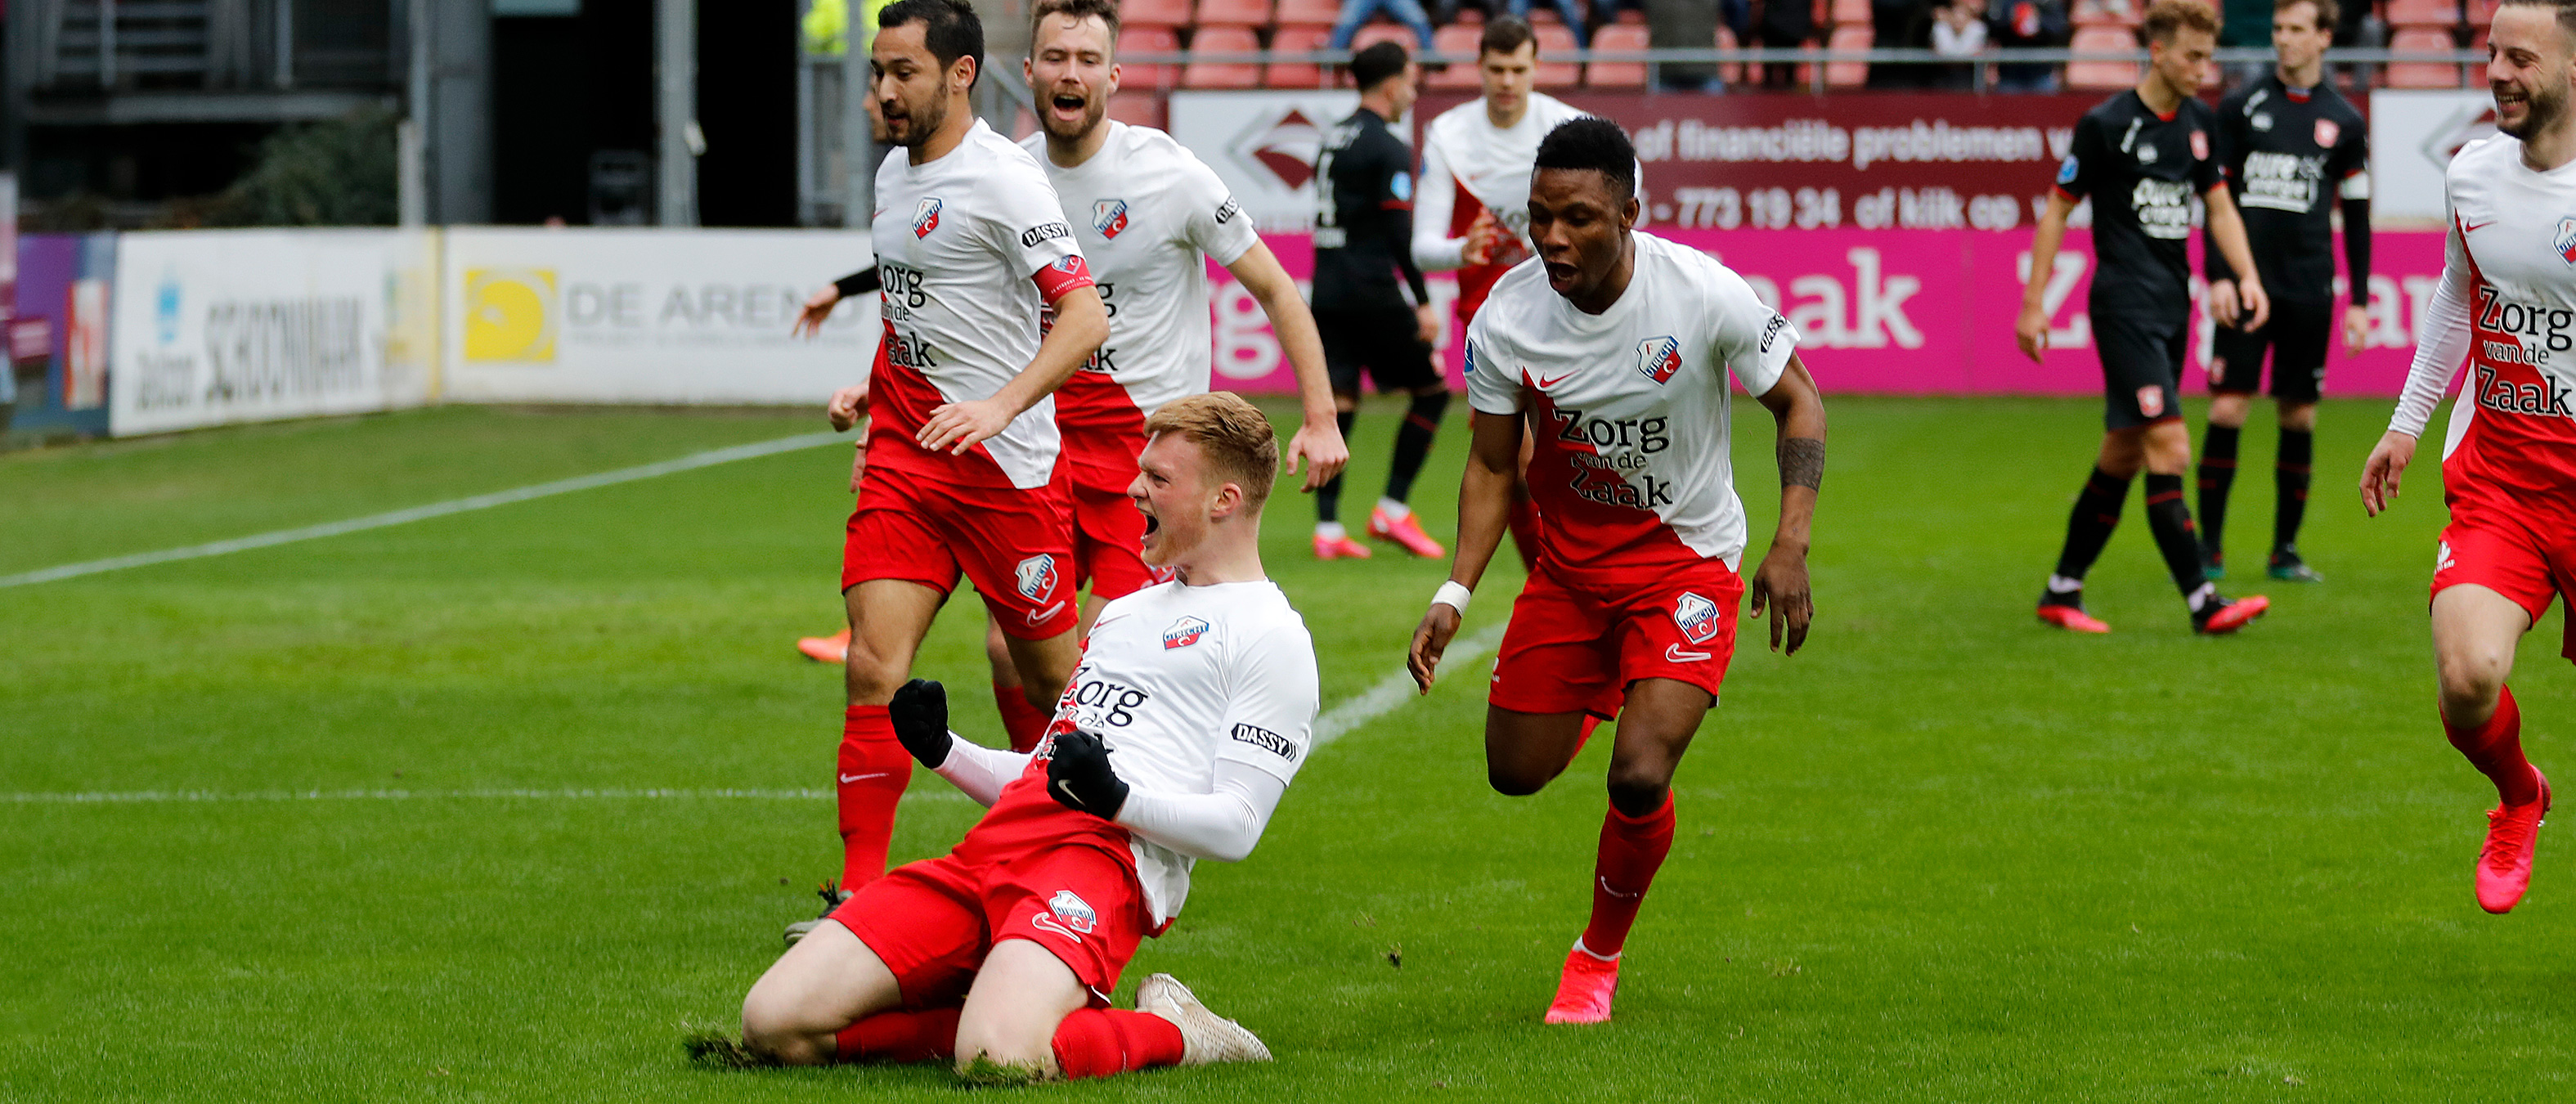 Droomdebuut Arweiler, winst op FC Twente